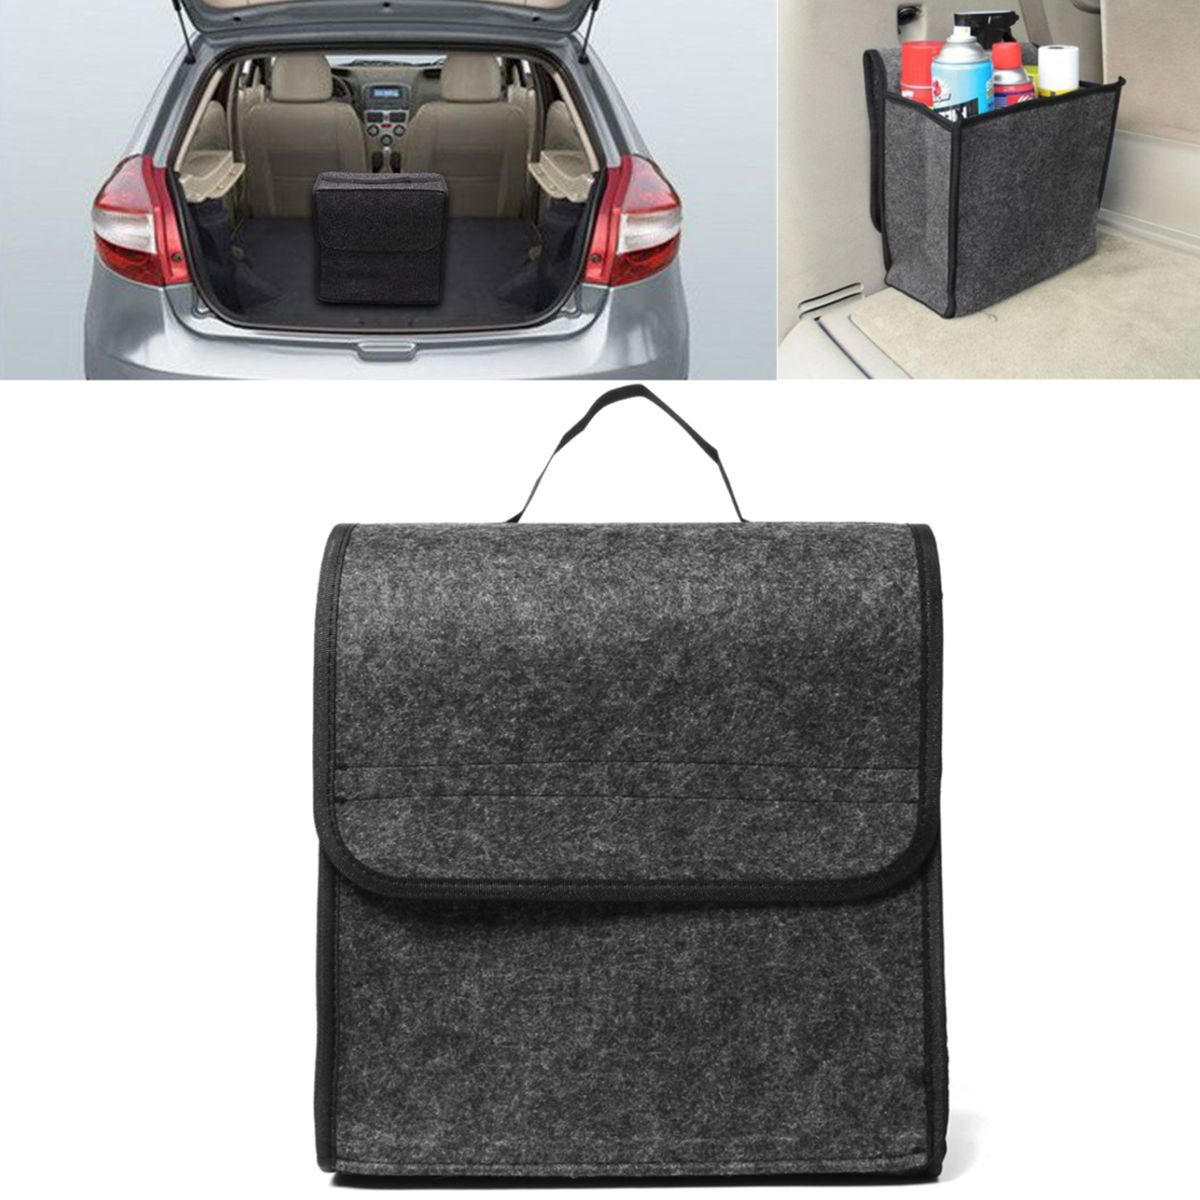 11.8x11.4 x6.3inch Felt Cloth Foldable Car Back Rear Seat Organizer Travel Storage Interior Bag Hold 1